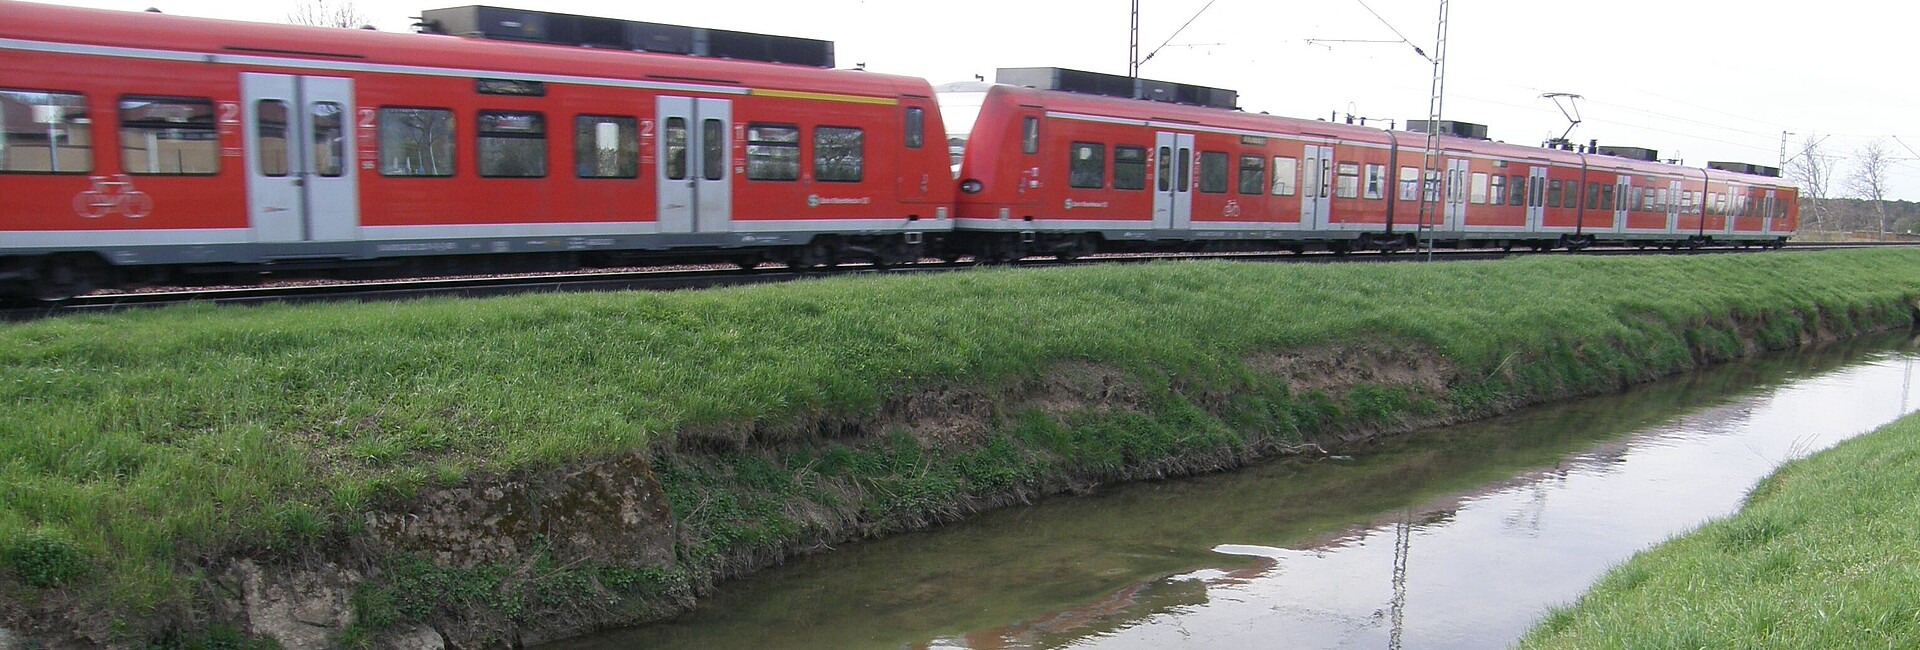 Auf dem Bild sieht man im Vordergrund den monotonen Gewässerlauf des Leimbachs und im Hintergrund die unmittelbar angrenzende parallel verlaufende Bahntrasse auf der gerade ein Zug fährt.